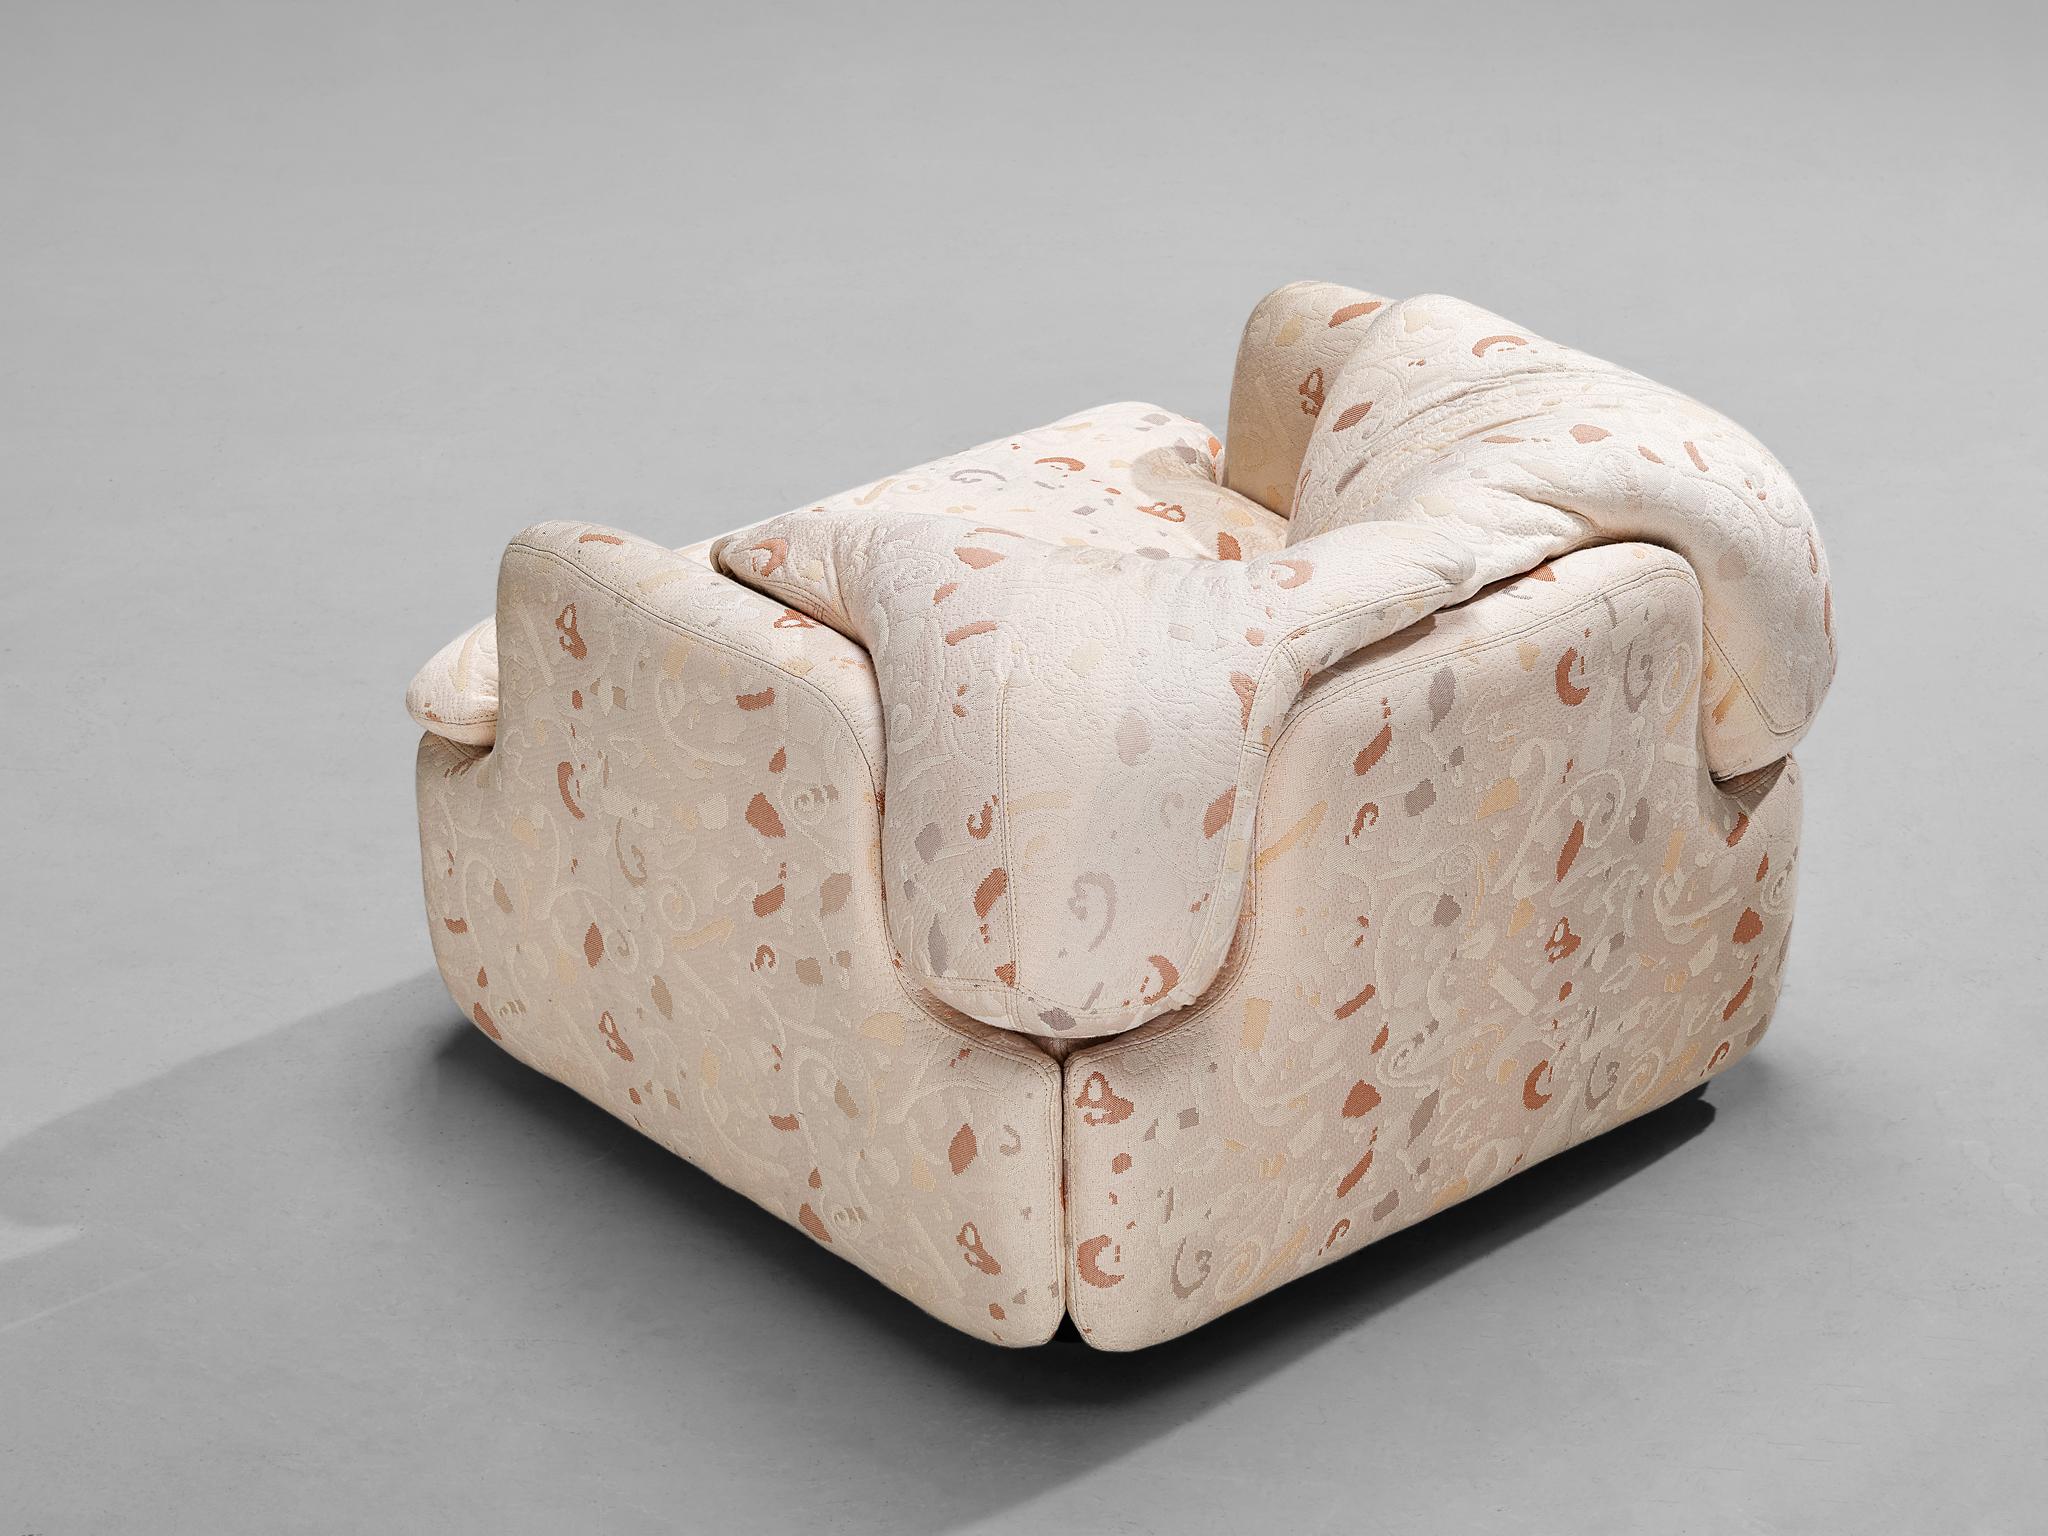 Fabric Alberto Rosselli for Saporiti 'Confidential' Lounge Chair 